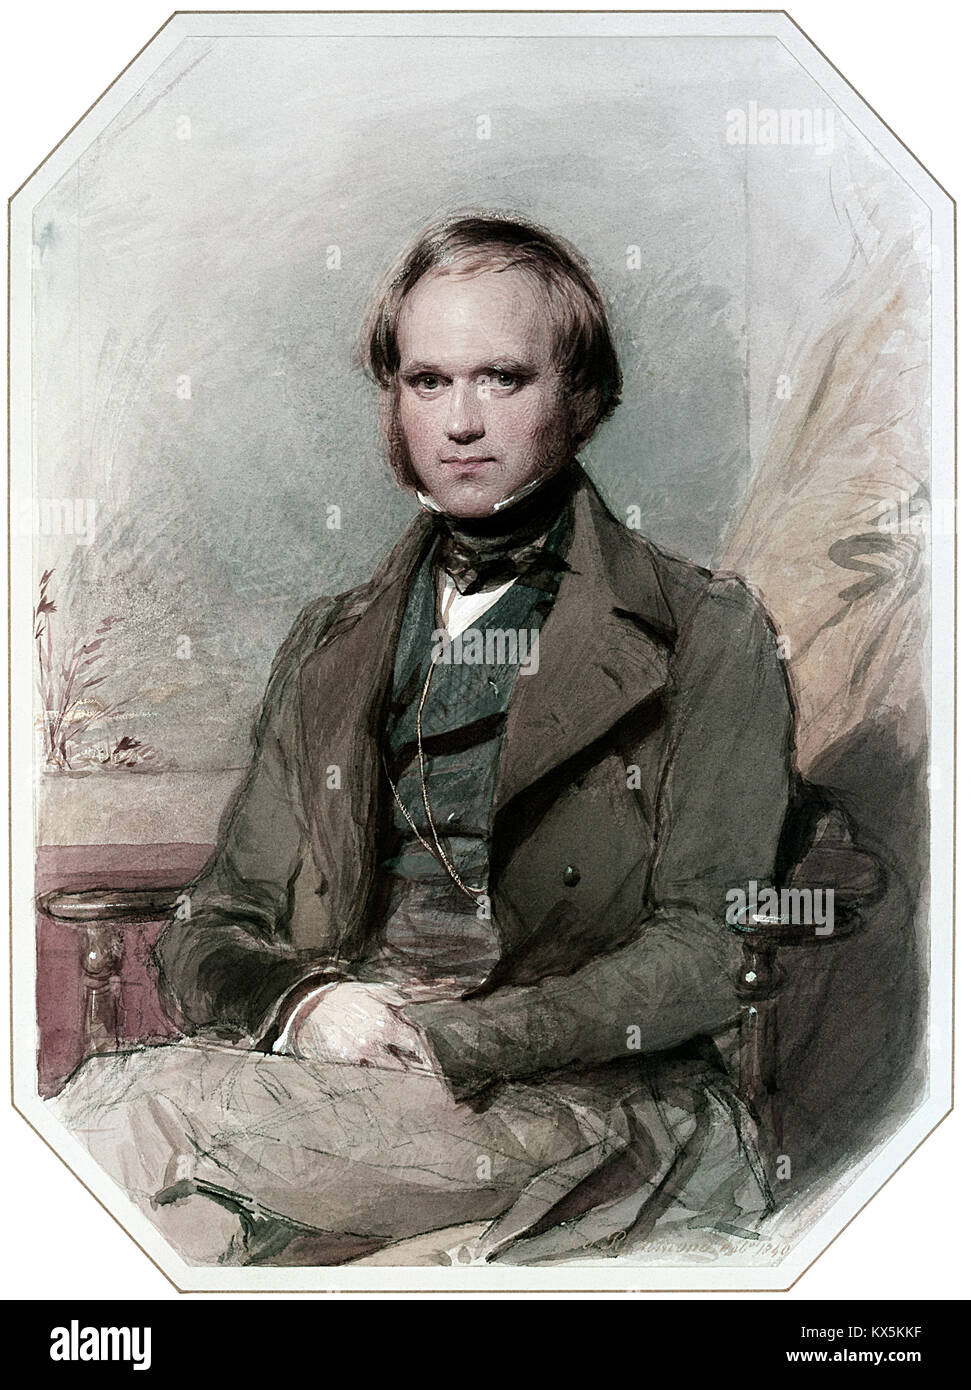 Charles Darwin, Charles Robert Darwin, englischer Wissenschaftler, der für seine Beiträge zur Wissenschaft der Evolution bekannt Stockfoto